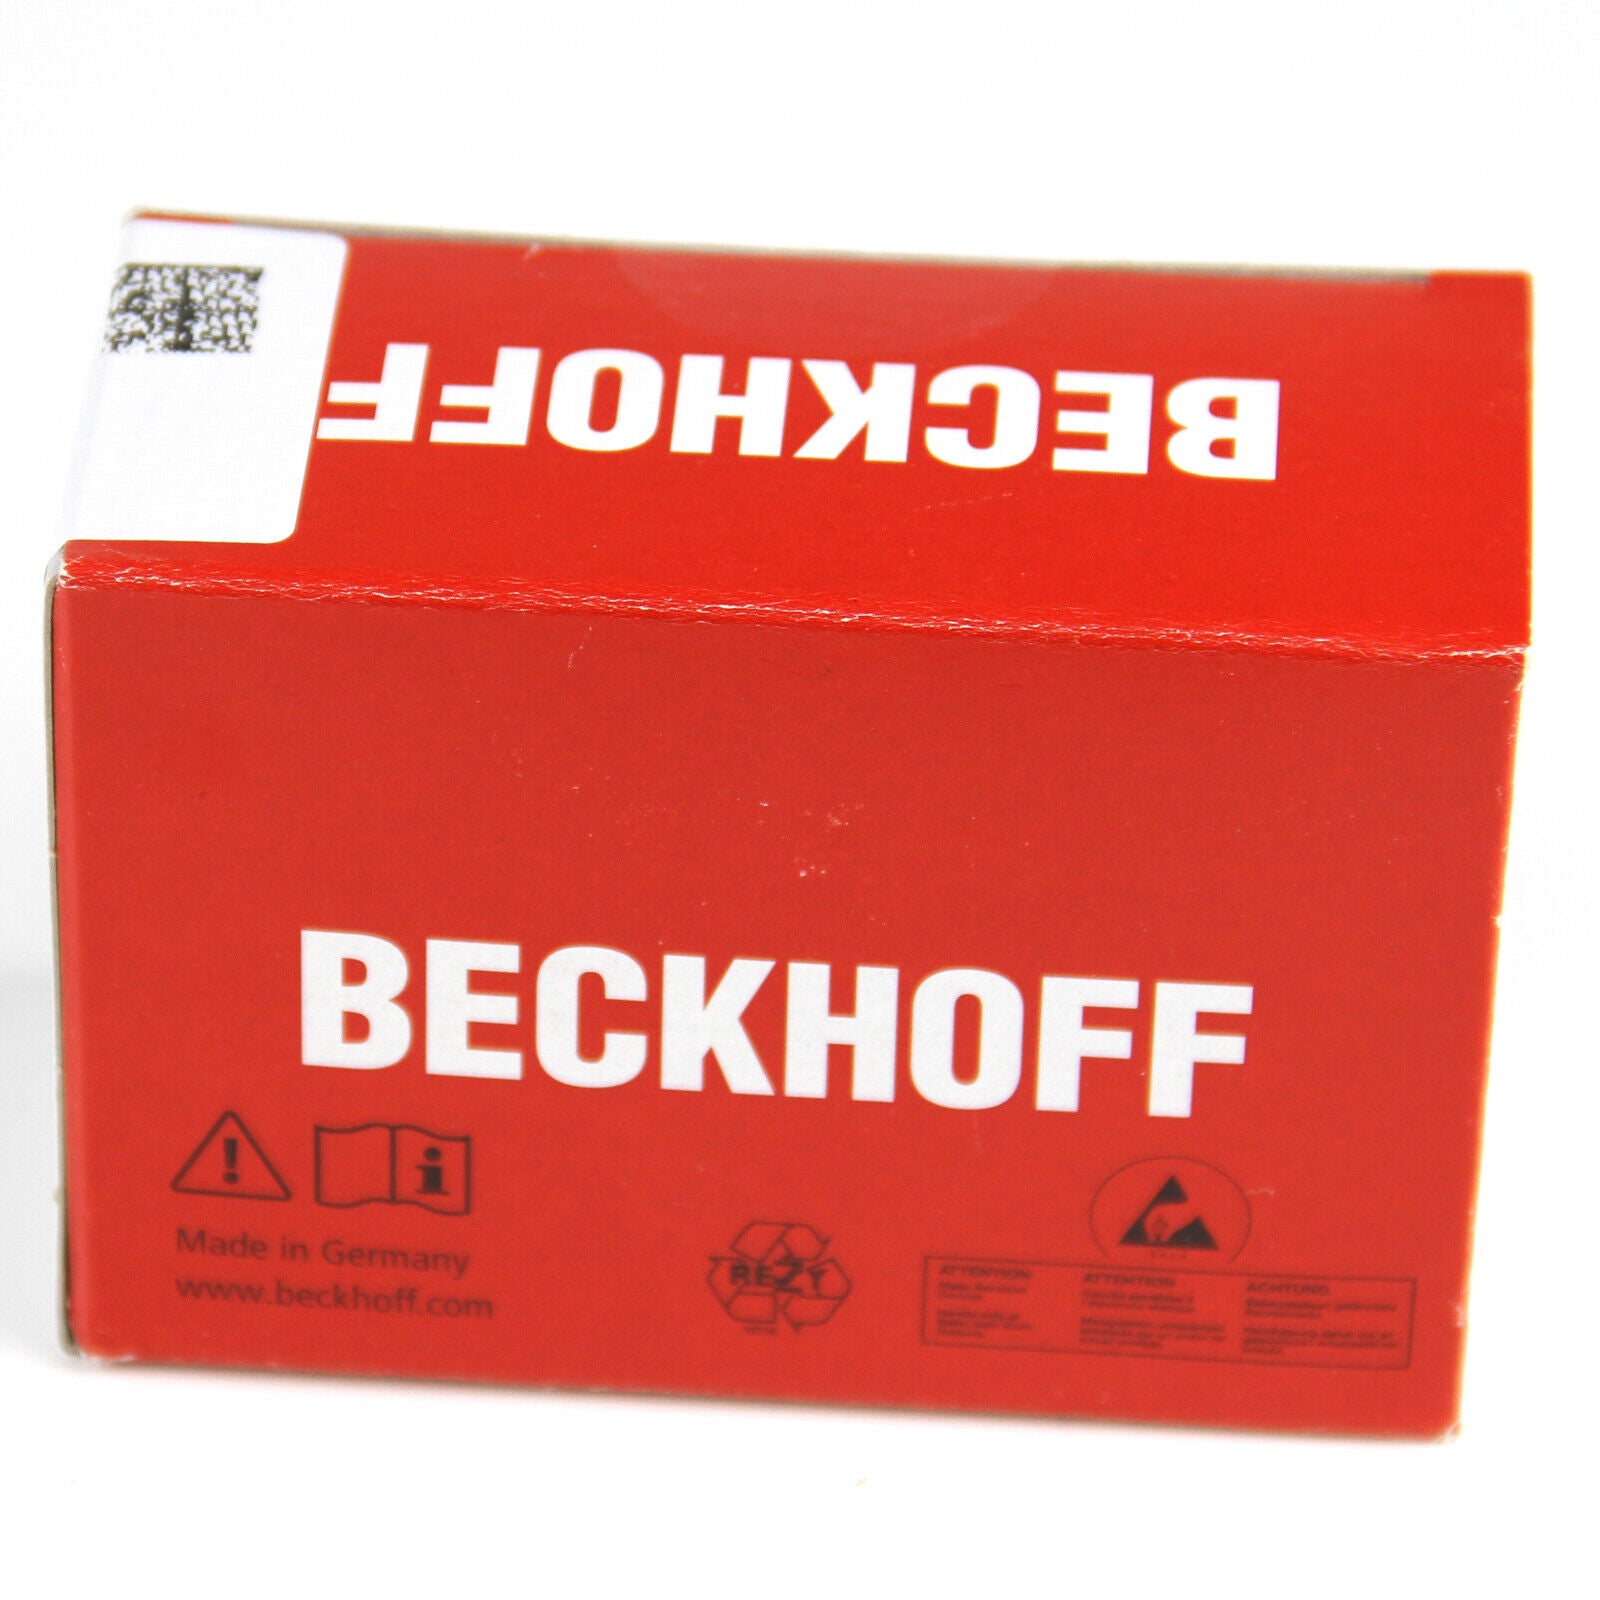 new  BECKHOFF BK5250 DeviceNet Compact Bus Coupler